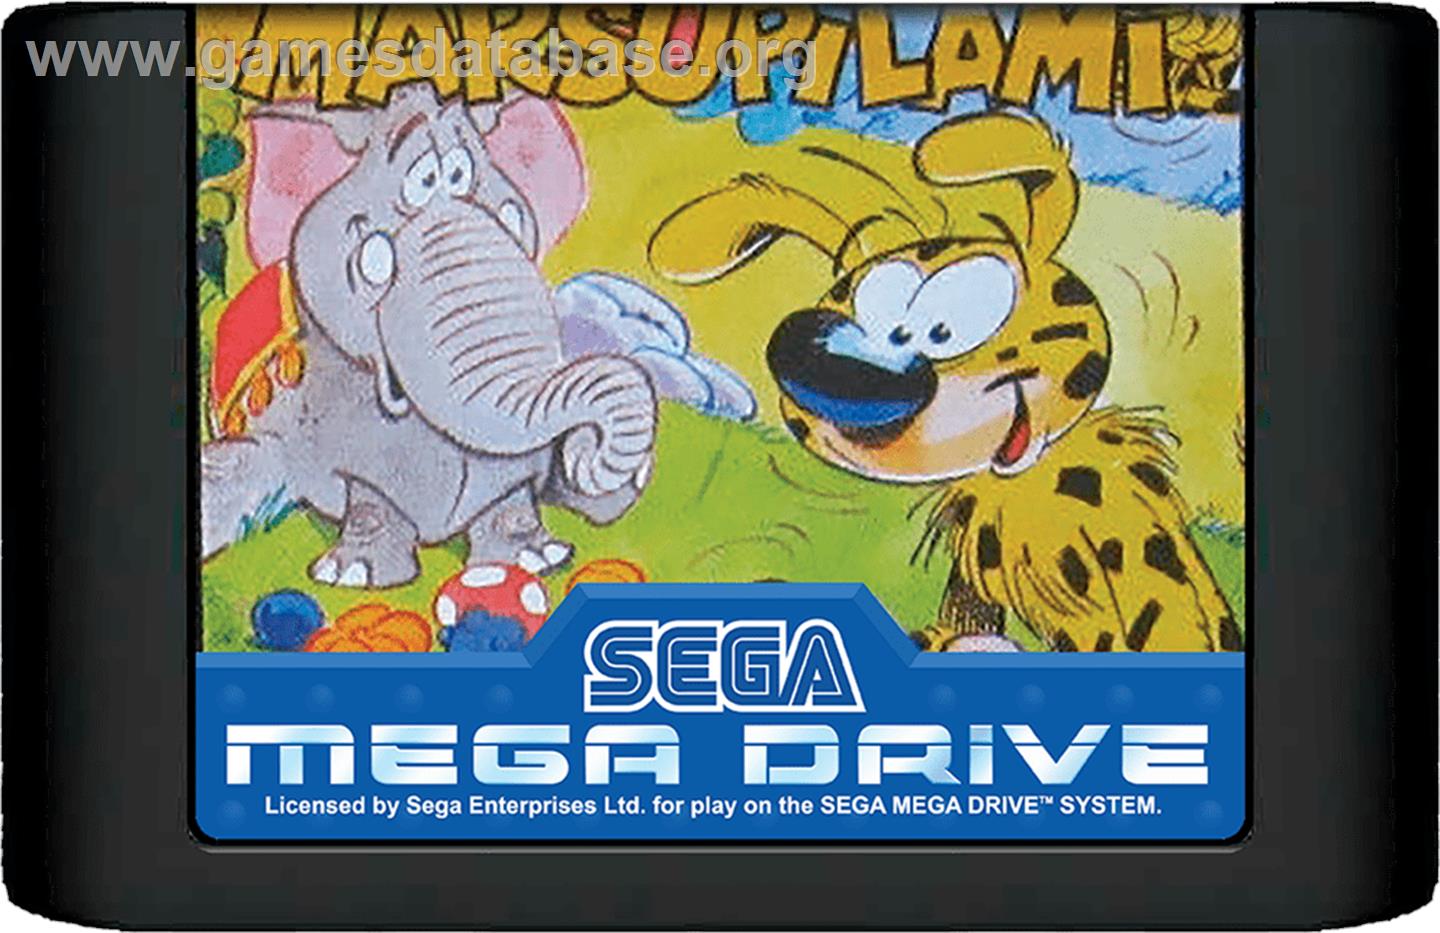 Marsupilami - Sega Genesis - Artwork - Cartridge